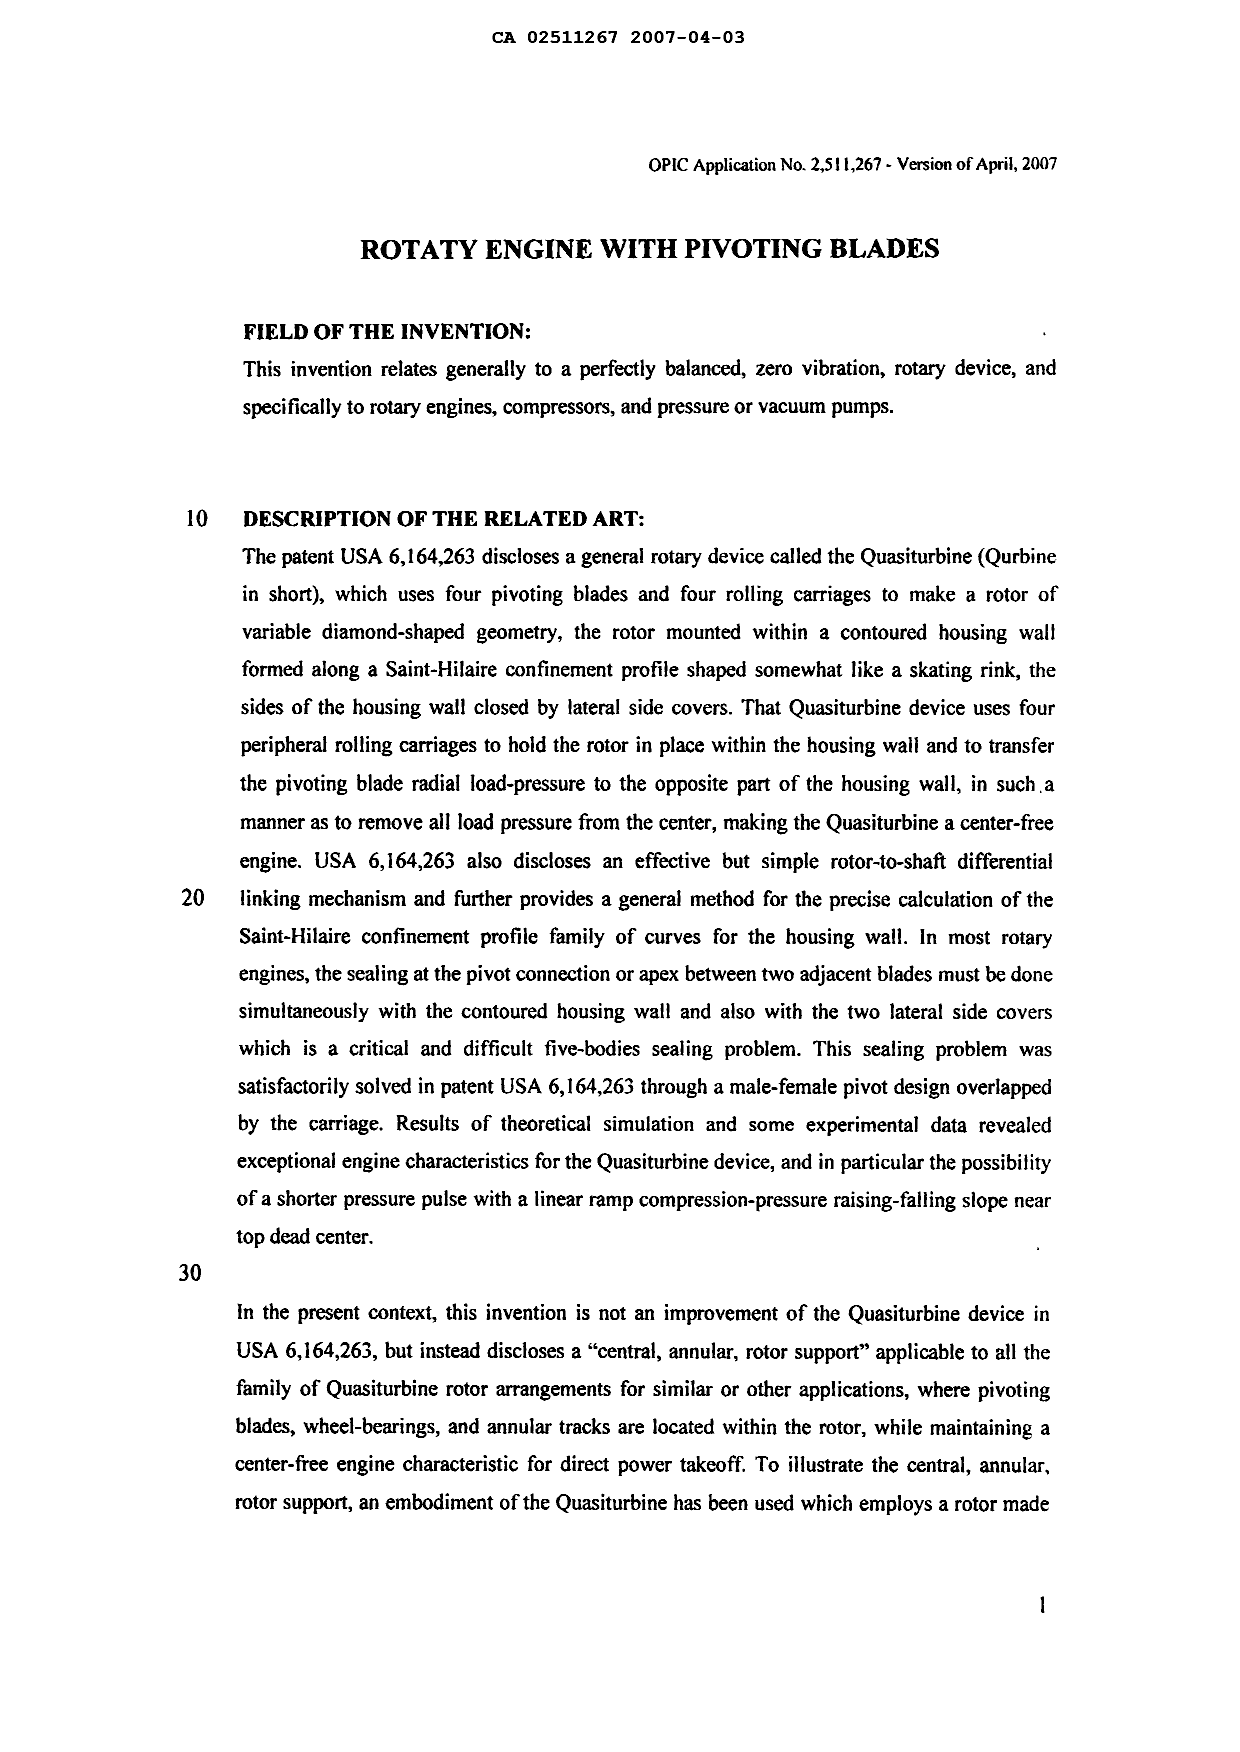 Canadian Patent Document 2511267. Description 20061203. Image 1 of 17